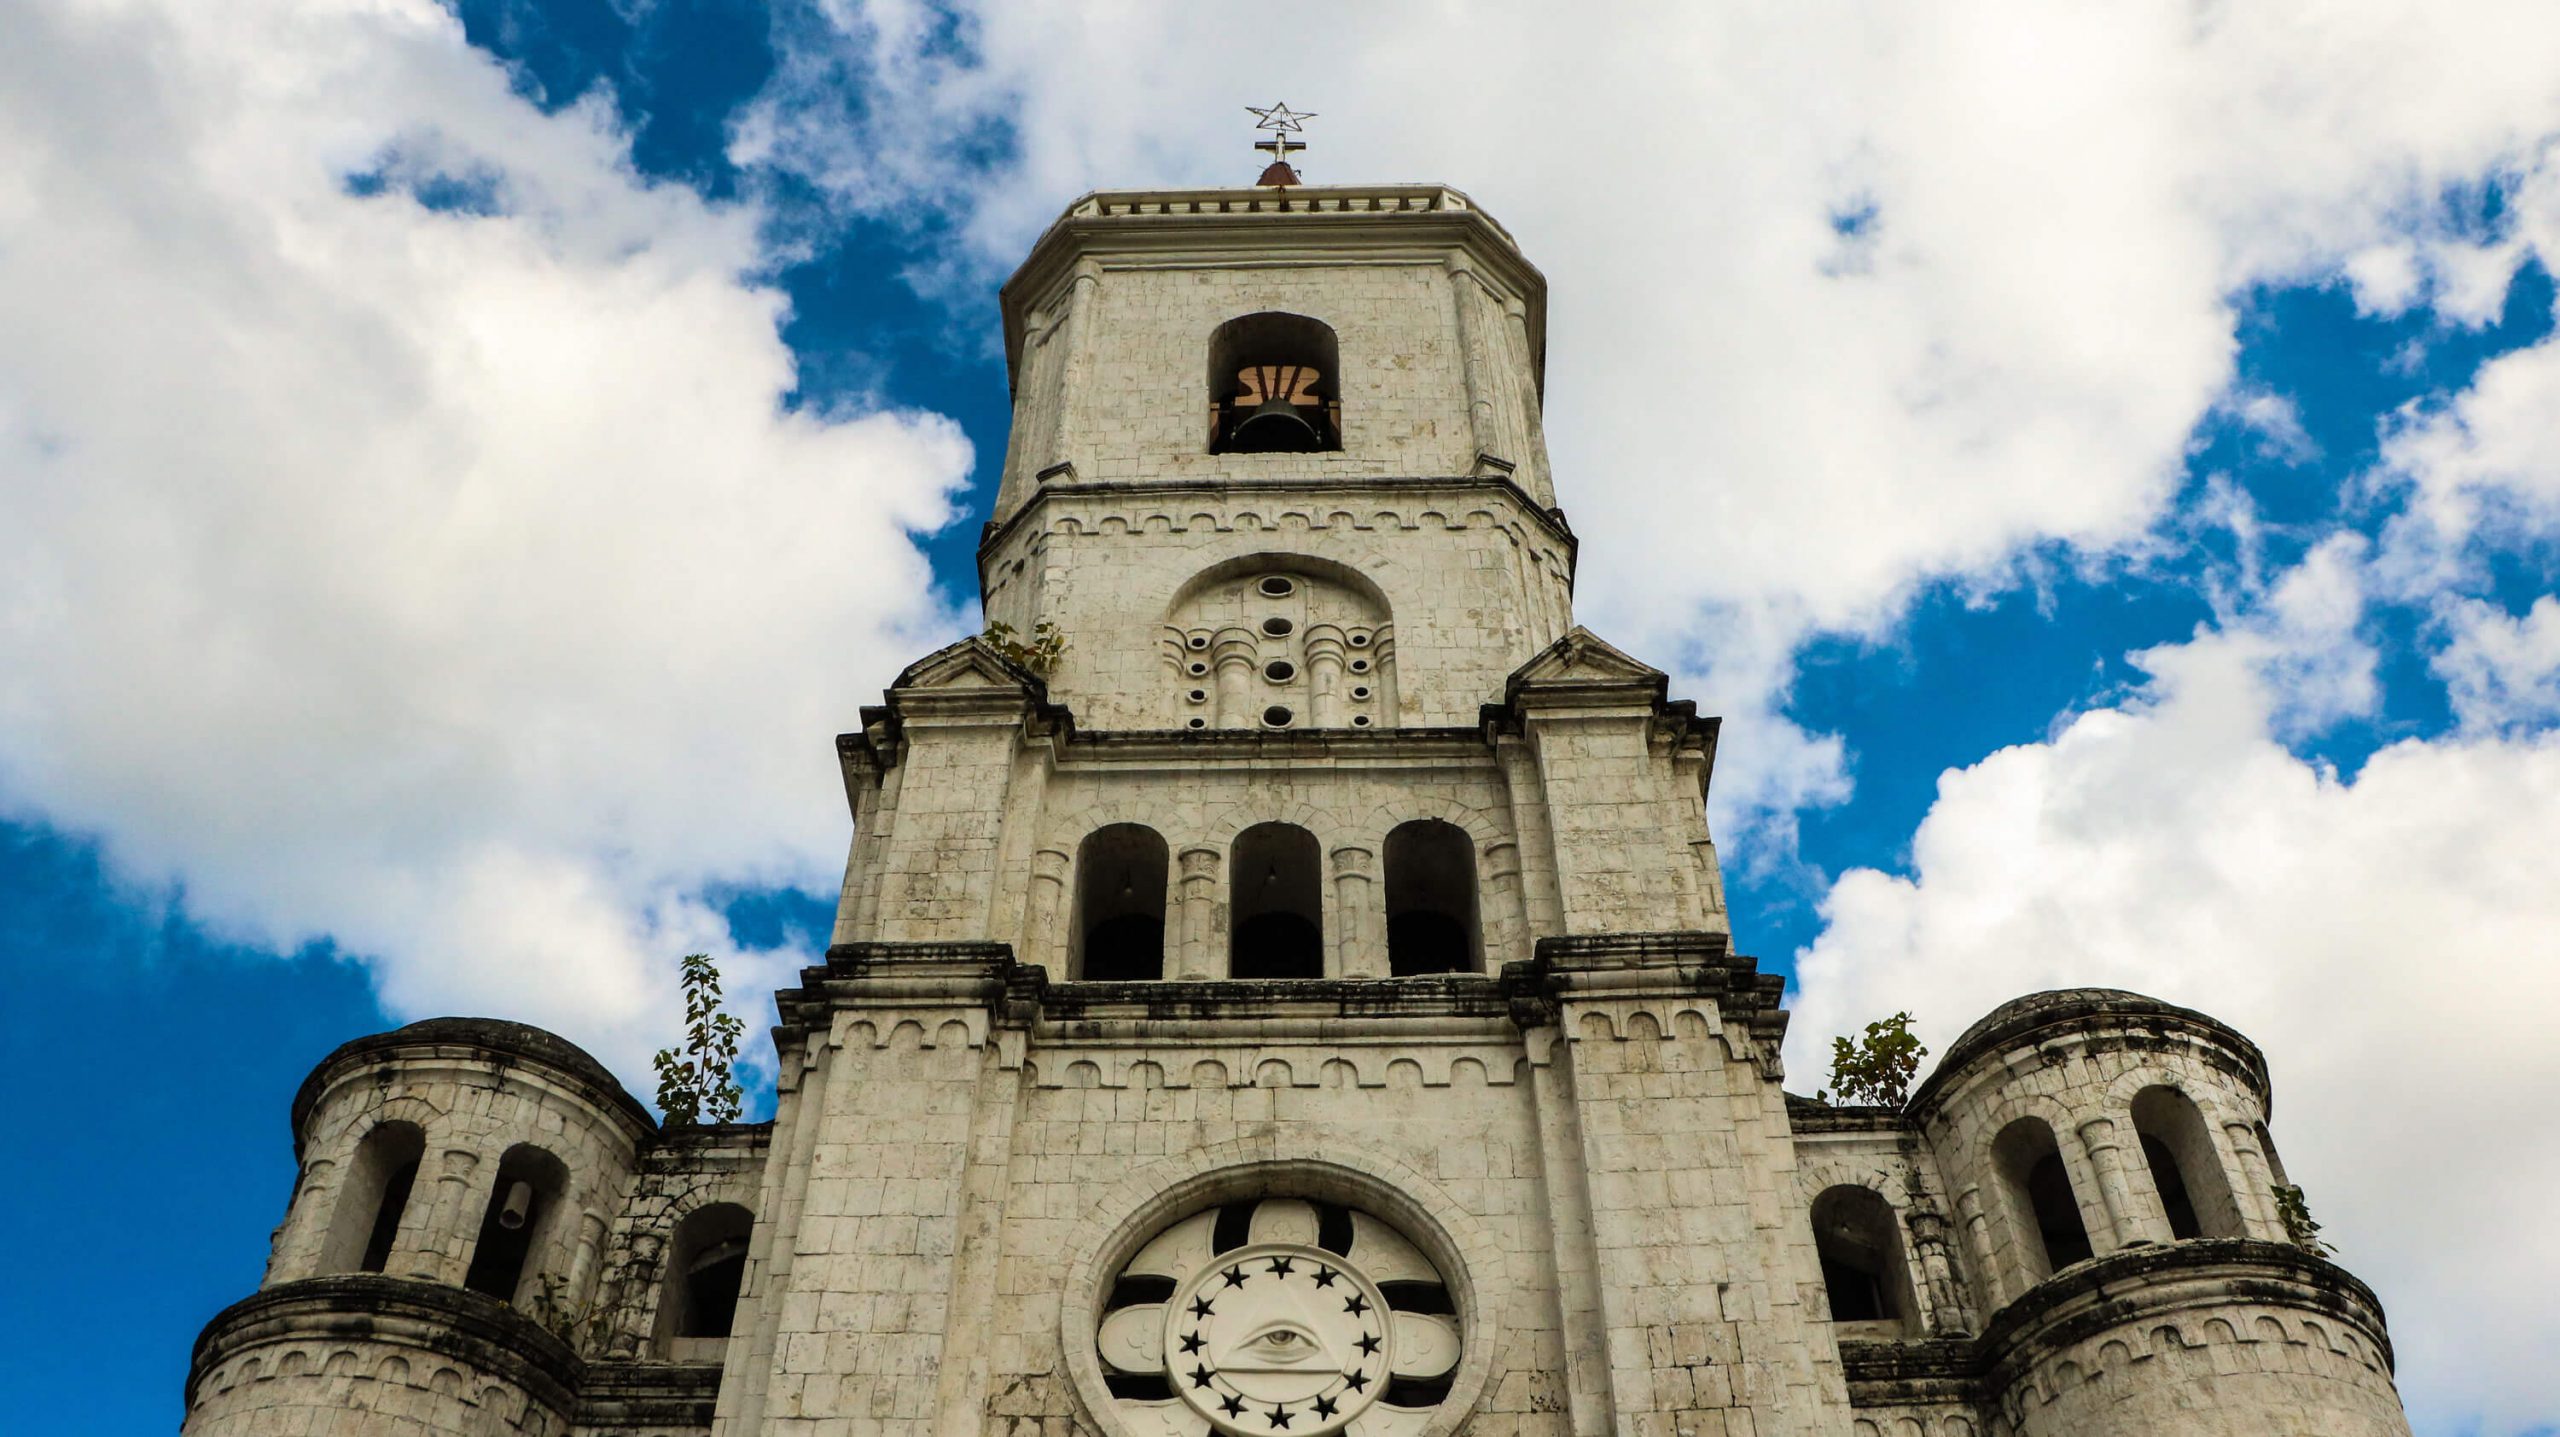 The Santo Tomas de Villanueva parish church in Pardo has a massive facade.